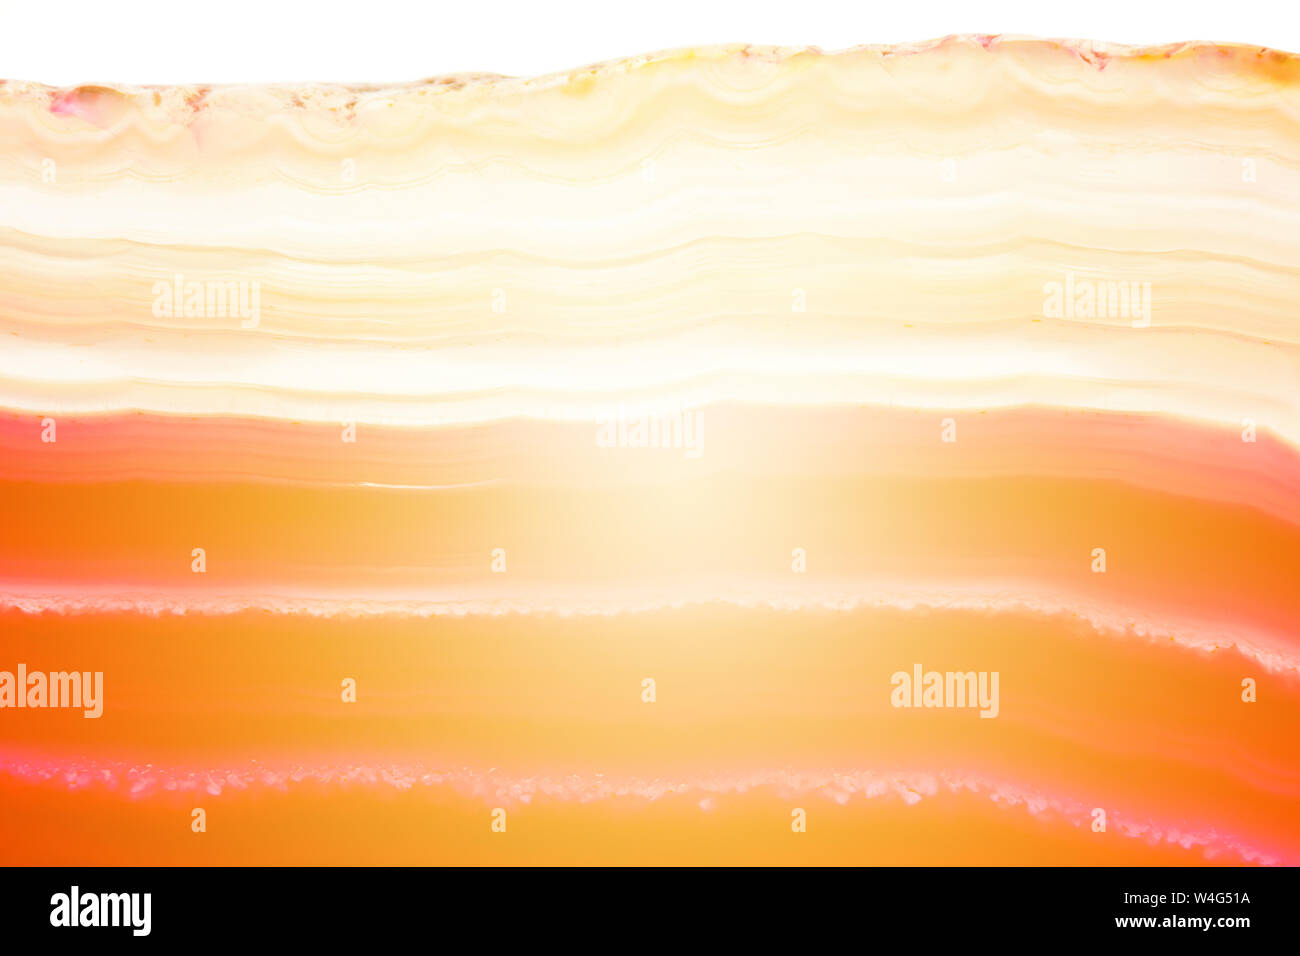 Résumé fond, rouge et orange à rayures coupe d'agate minéraux avec sunbeam isolé sur fond blanc Banque D'Images